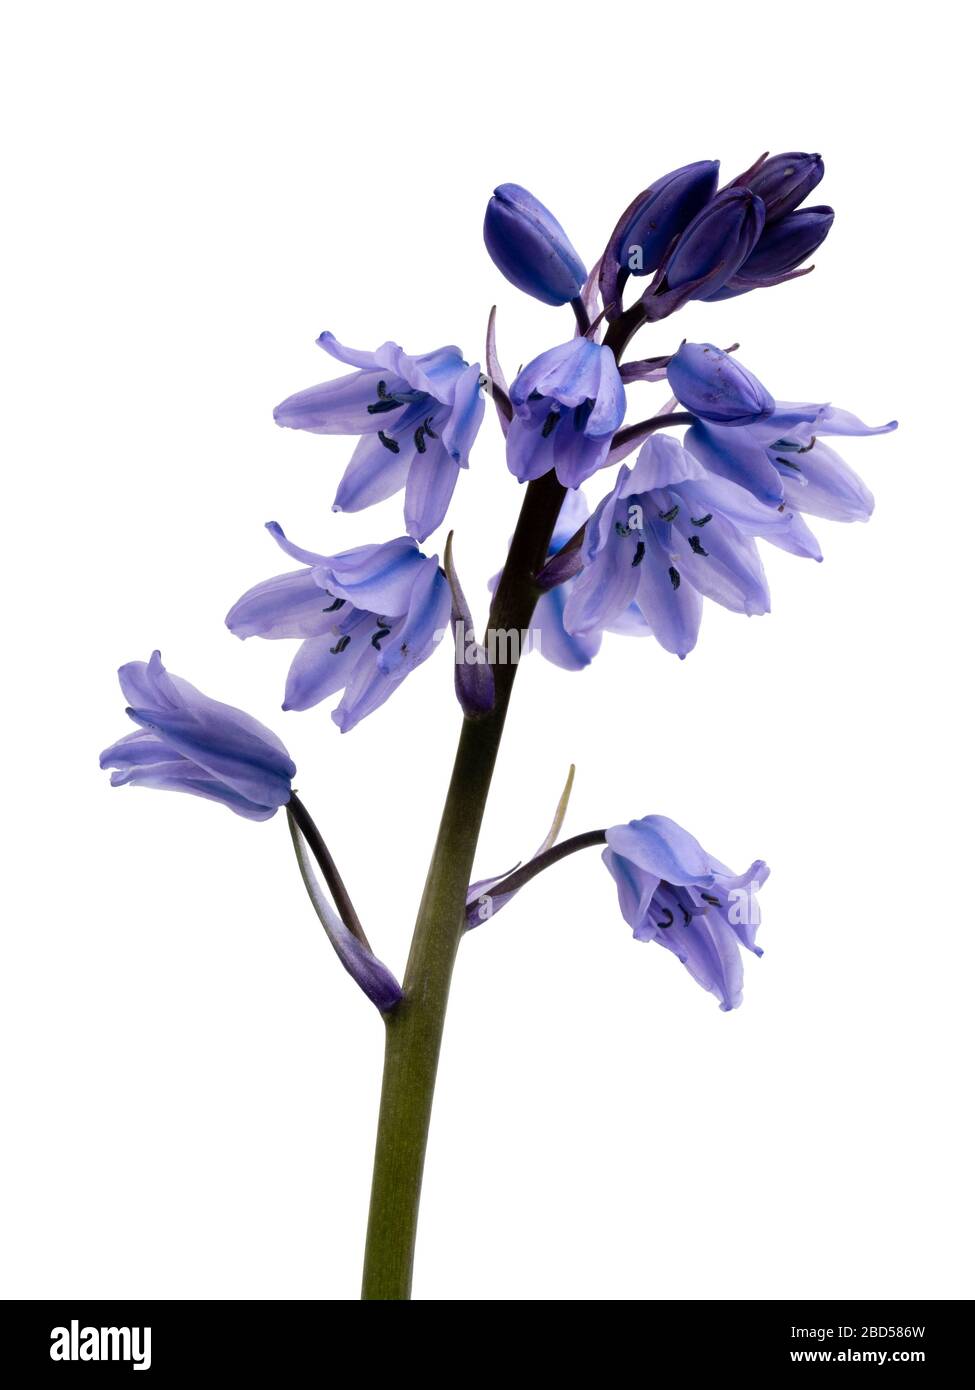 Fleurs printanières bleues et blanches antramées du bluebell espagnol, en jacinthoides hispanica, sur fond blanc Banque D'Images